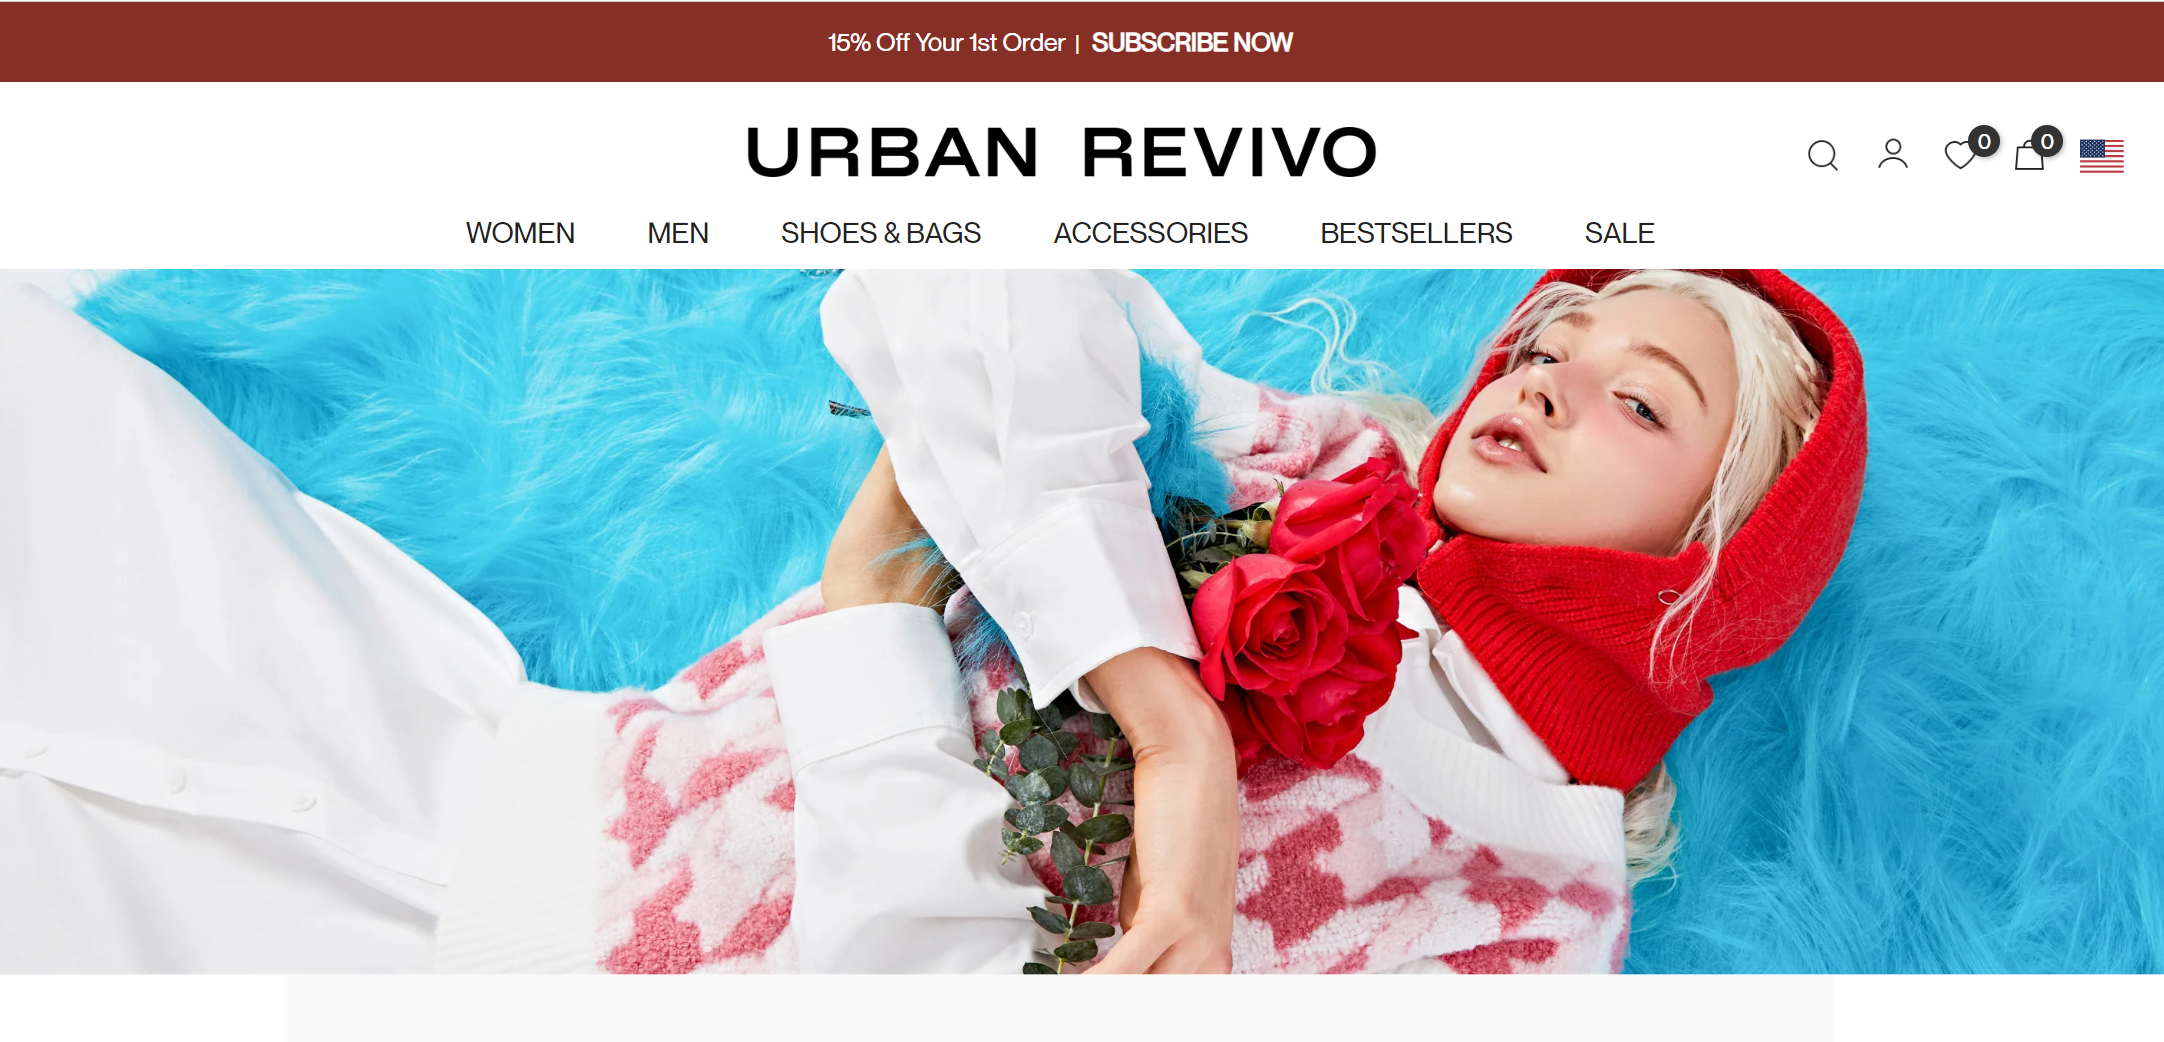 快时尚品牌Urban Revivo加快全球扩张！目标收入130亿美元